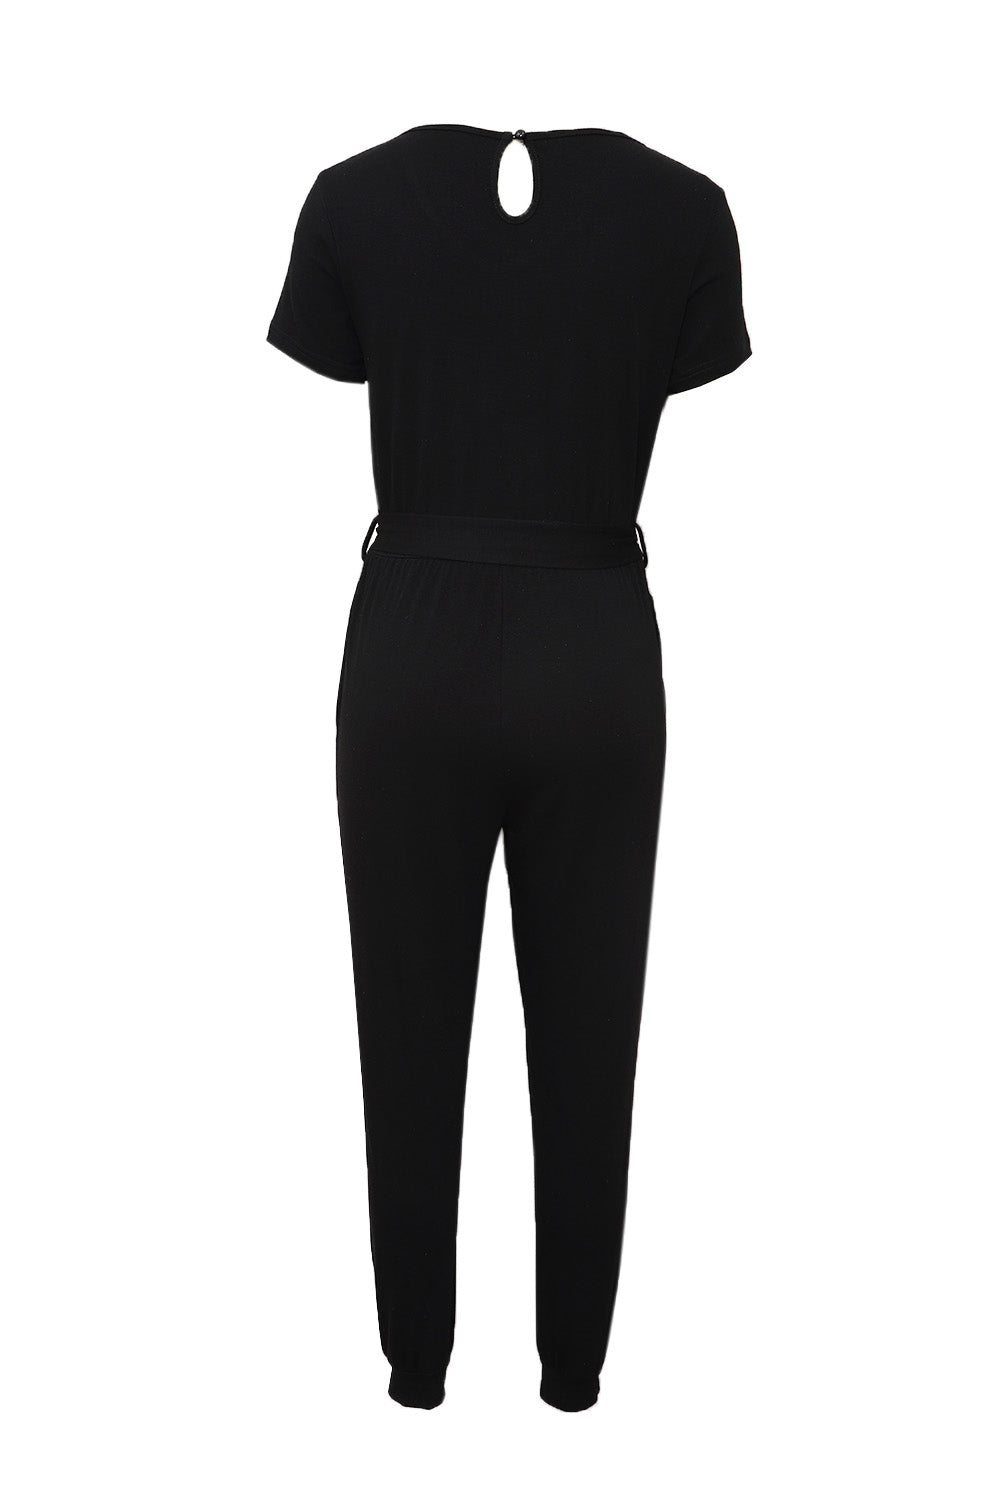 Black Short Sleeve Jogger Jumpsuit with Belt Family Bottoms JT's Designer Fashion